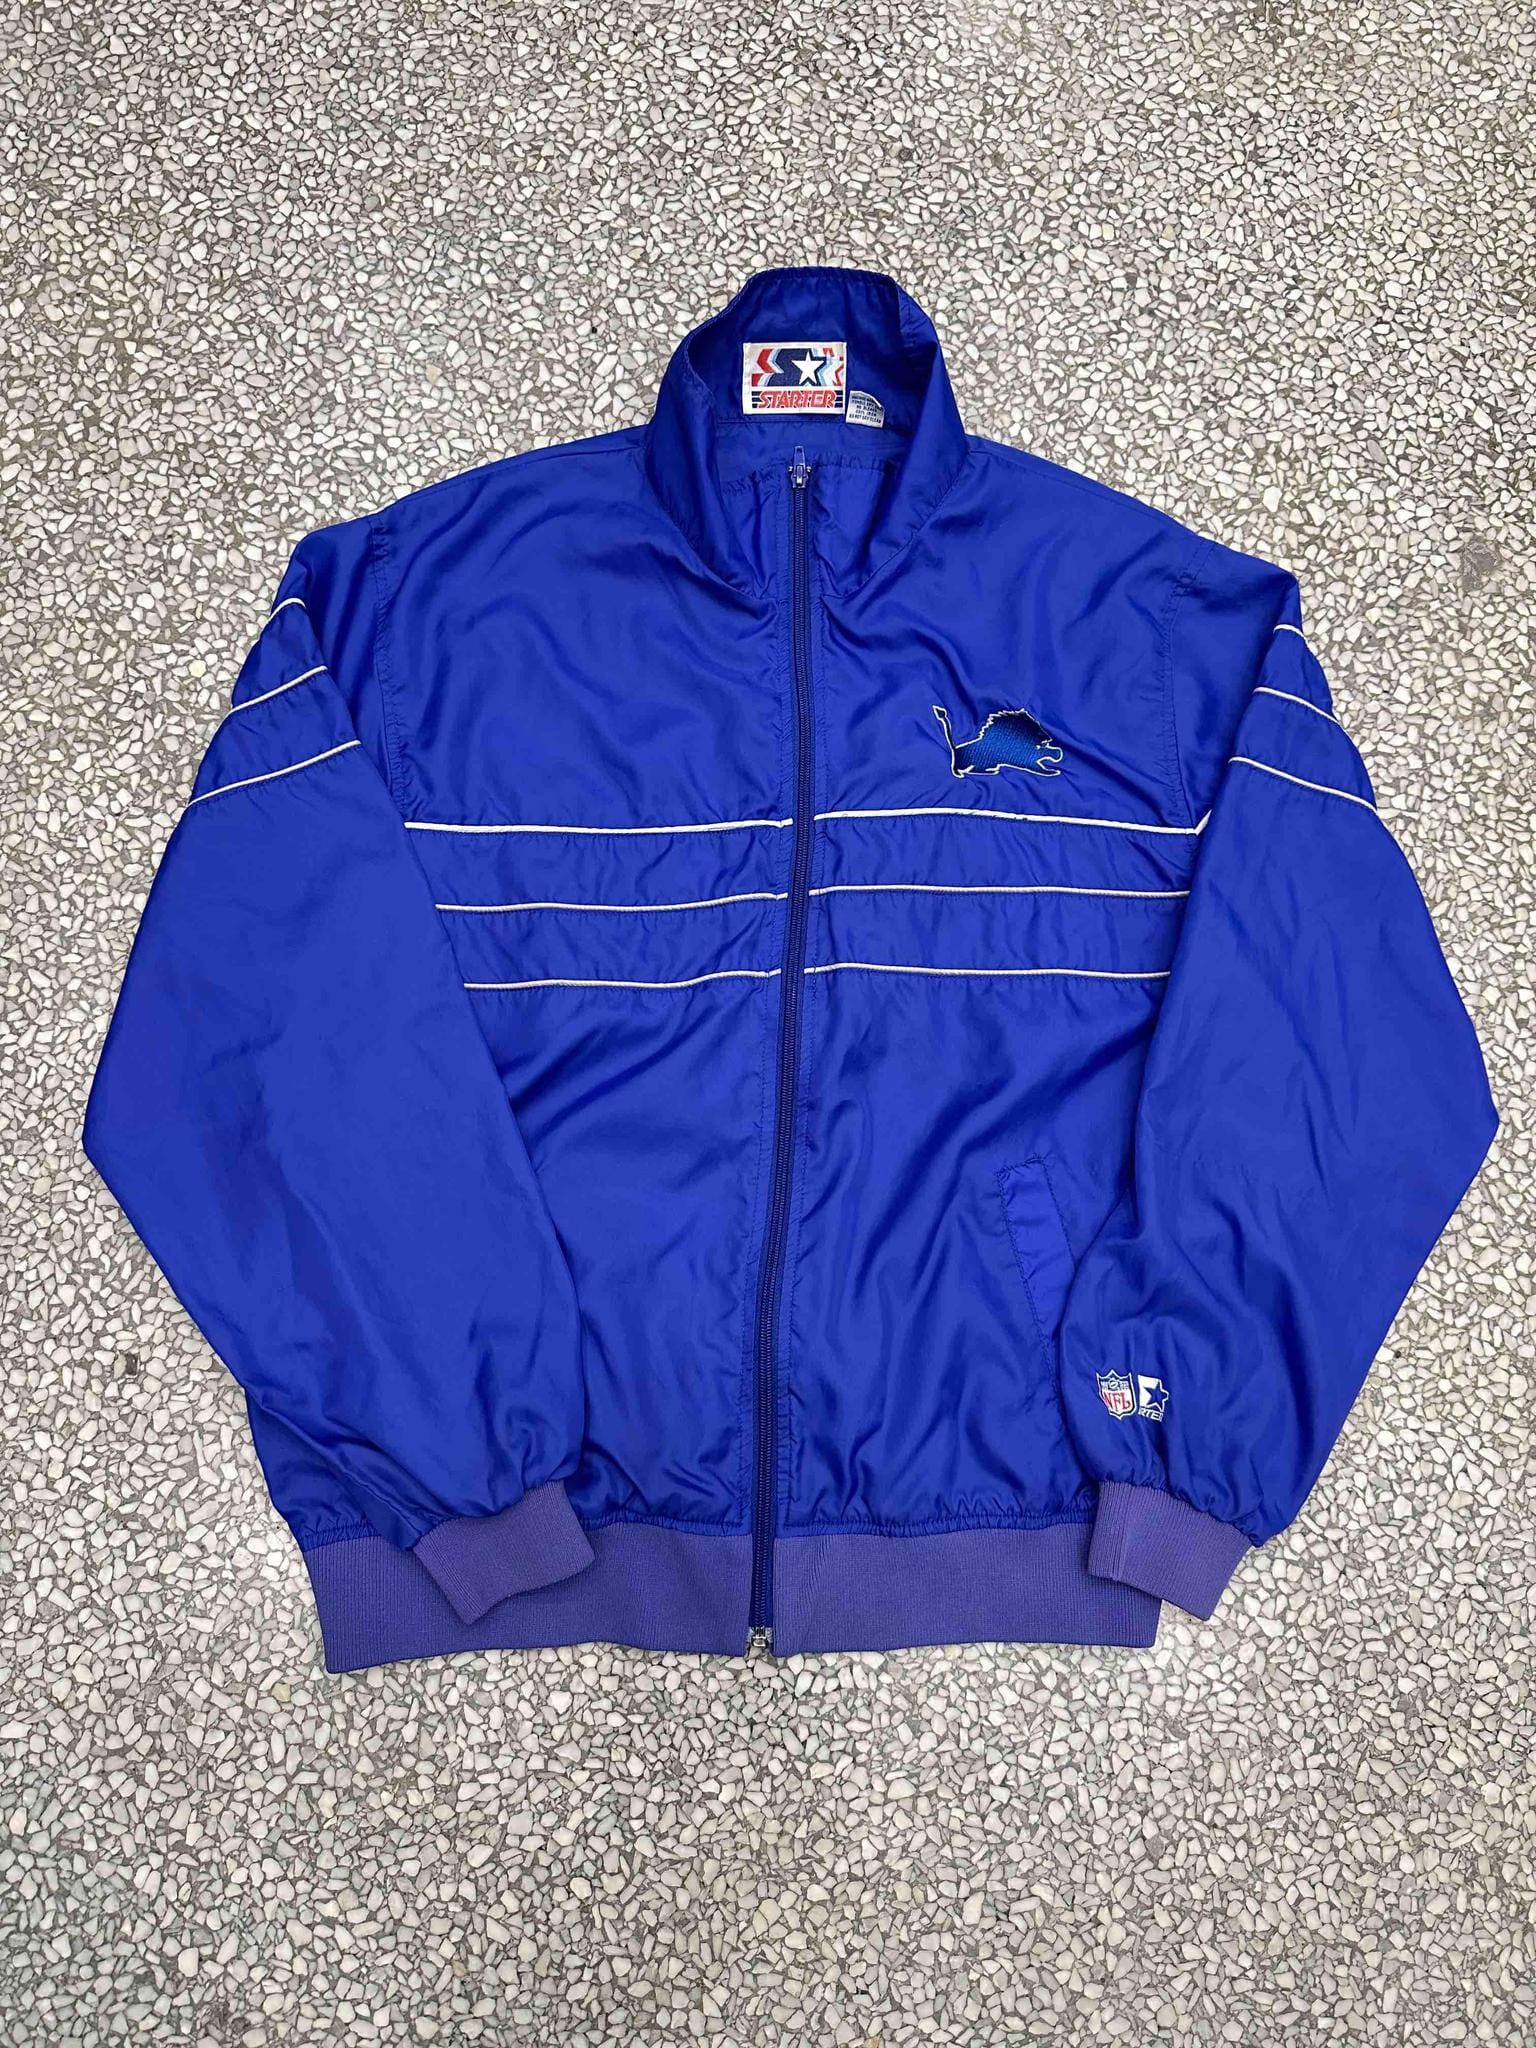 Detroit Lions Vintage 90s Starter Puffer Jacket